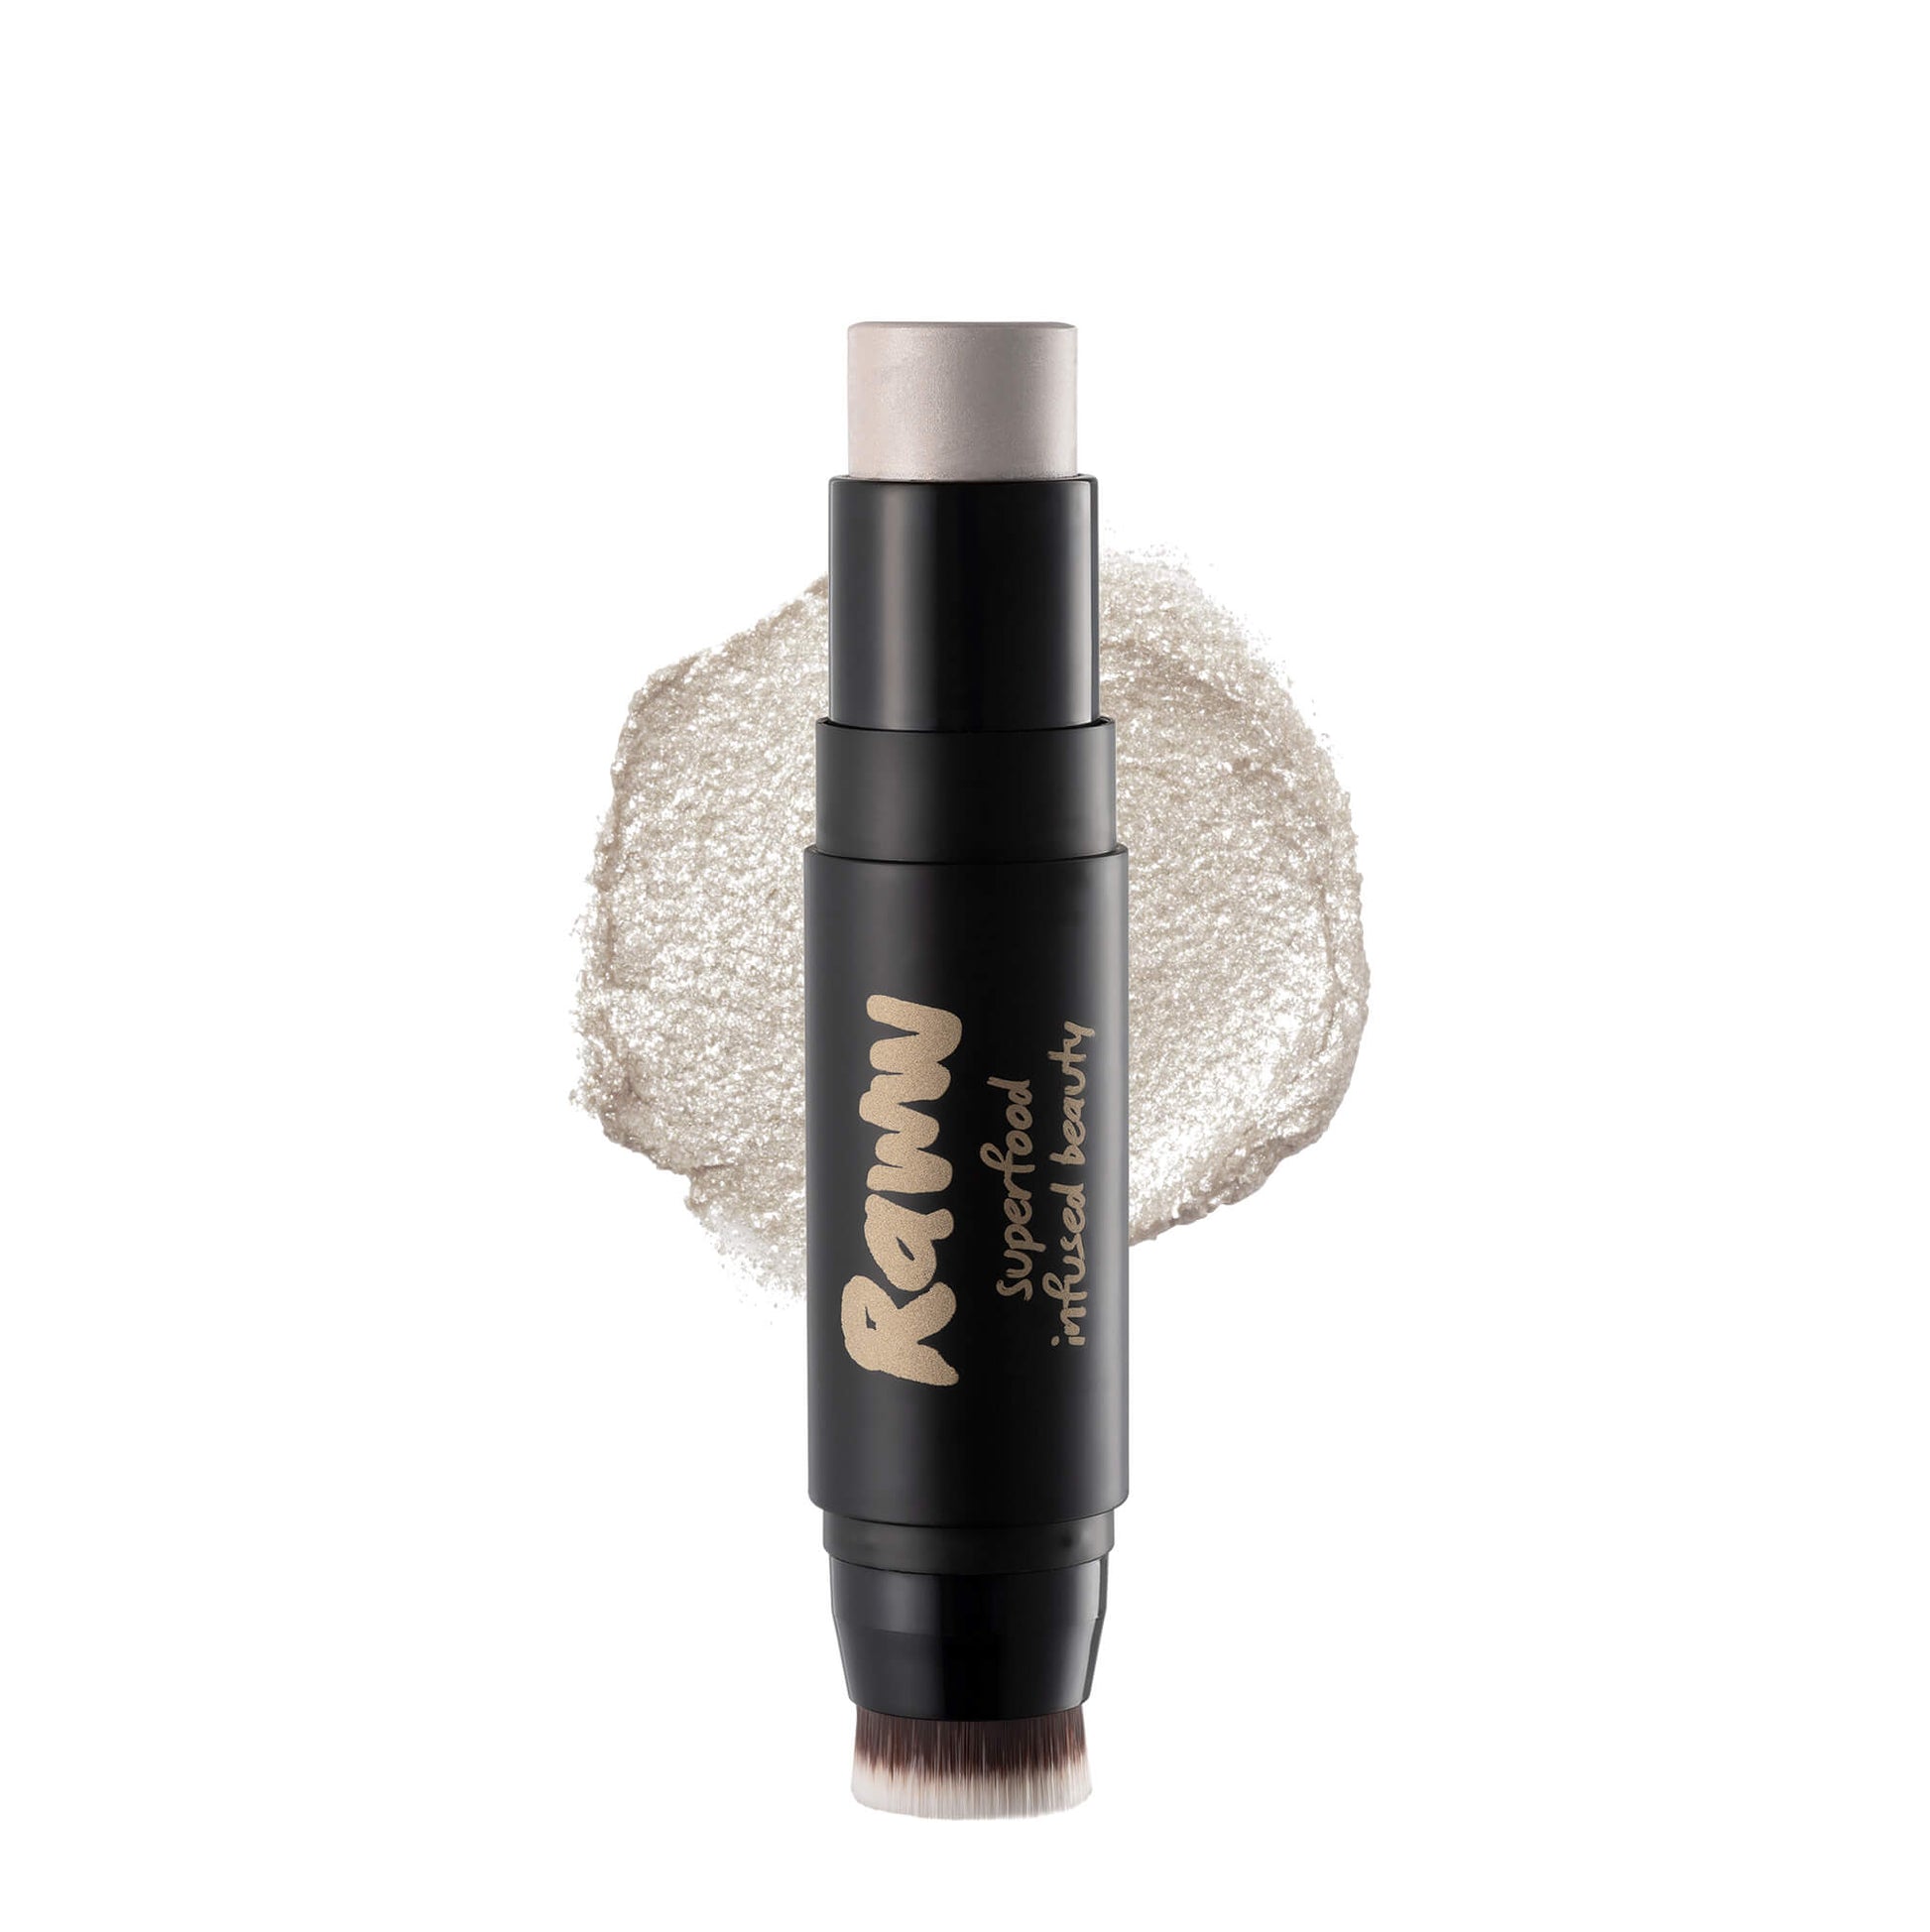 Acai Berry Glow Illuminator (Lychee Glow) | RAWW Cosmetics | Product + Swatch